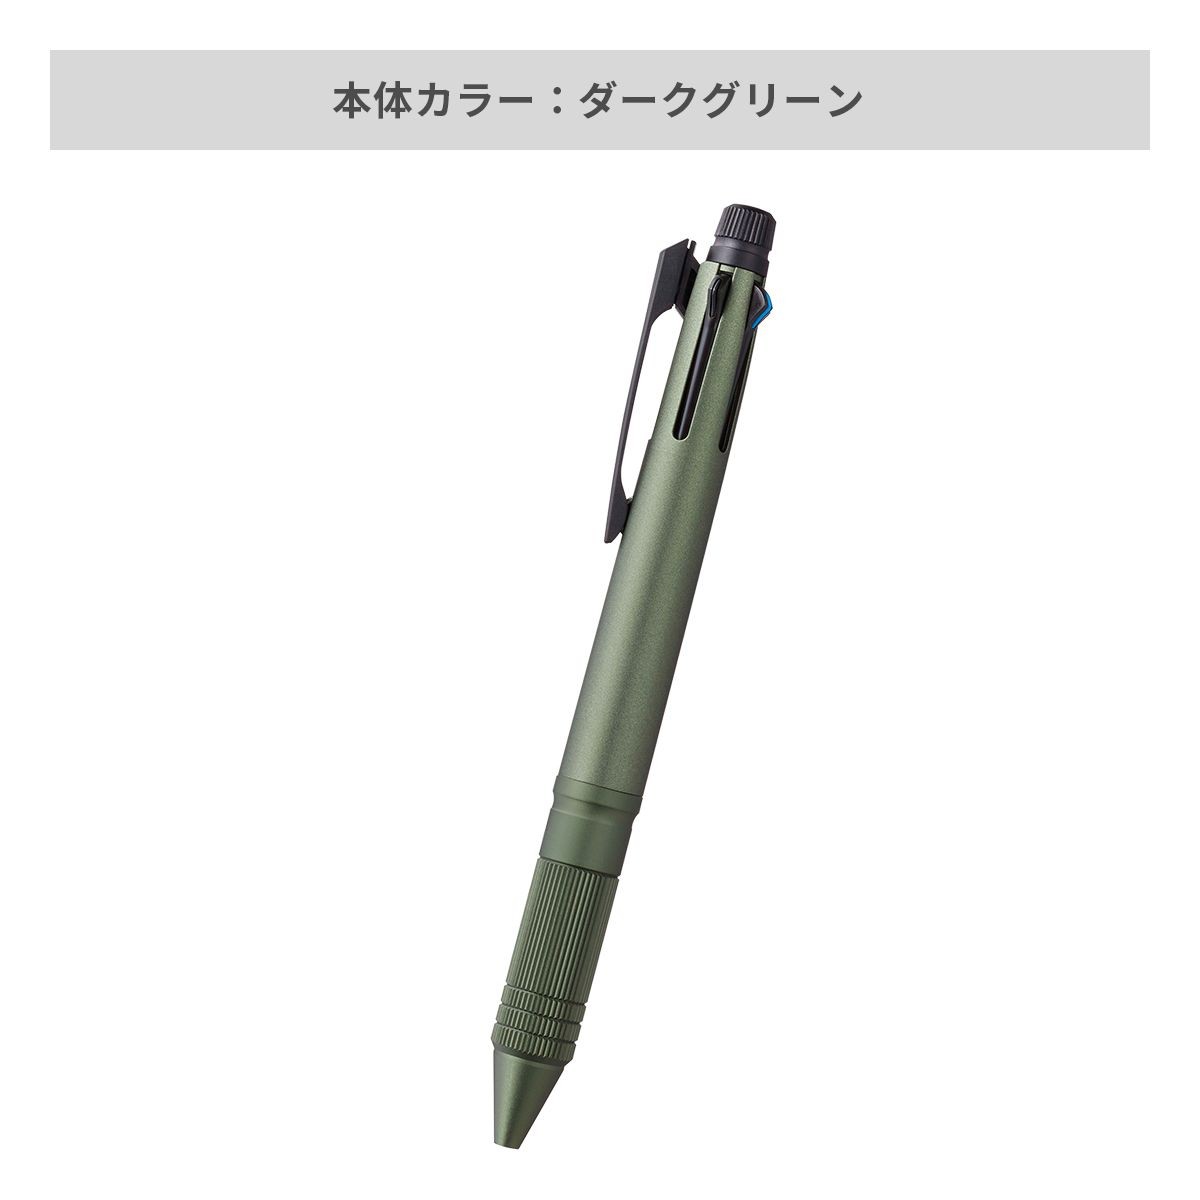 三菱鉛筆 ジェットストリーム メタルエディション 多機能ペン 4&1 0.5mm【多機能ペン / パッド印刷】 画像6